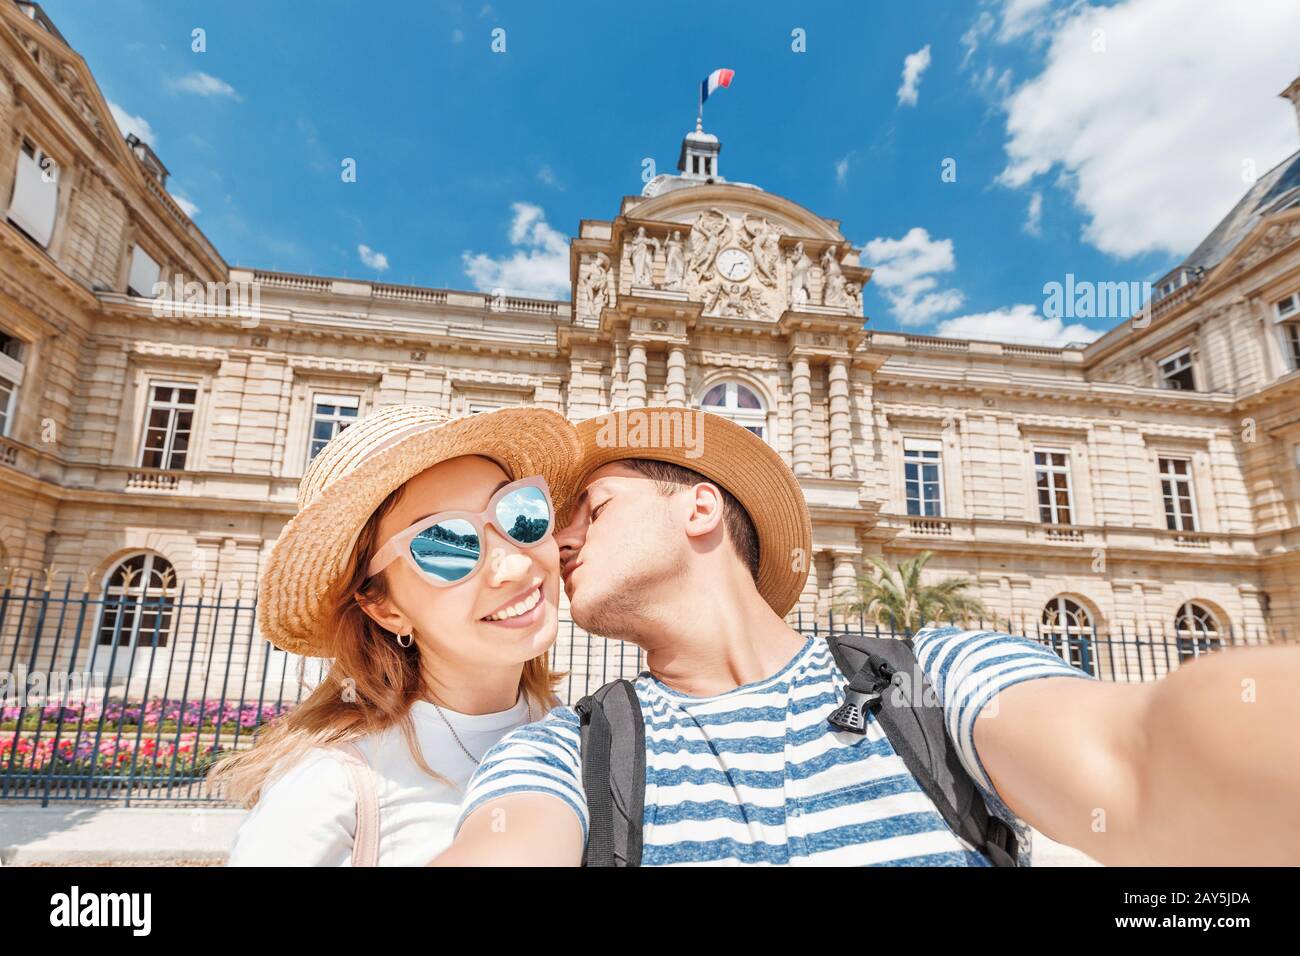 Un couple amoureux d'un homme européen et d'une fille asiatique voyage ensemble en France. Le concept de lune de miel et de week-end en Europe Banque D'Images